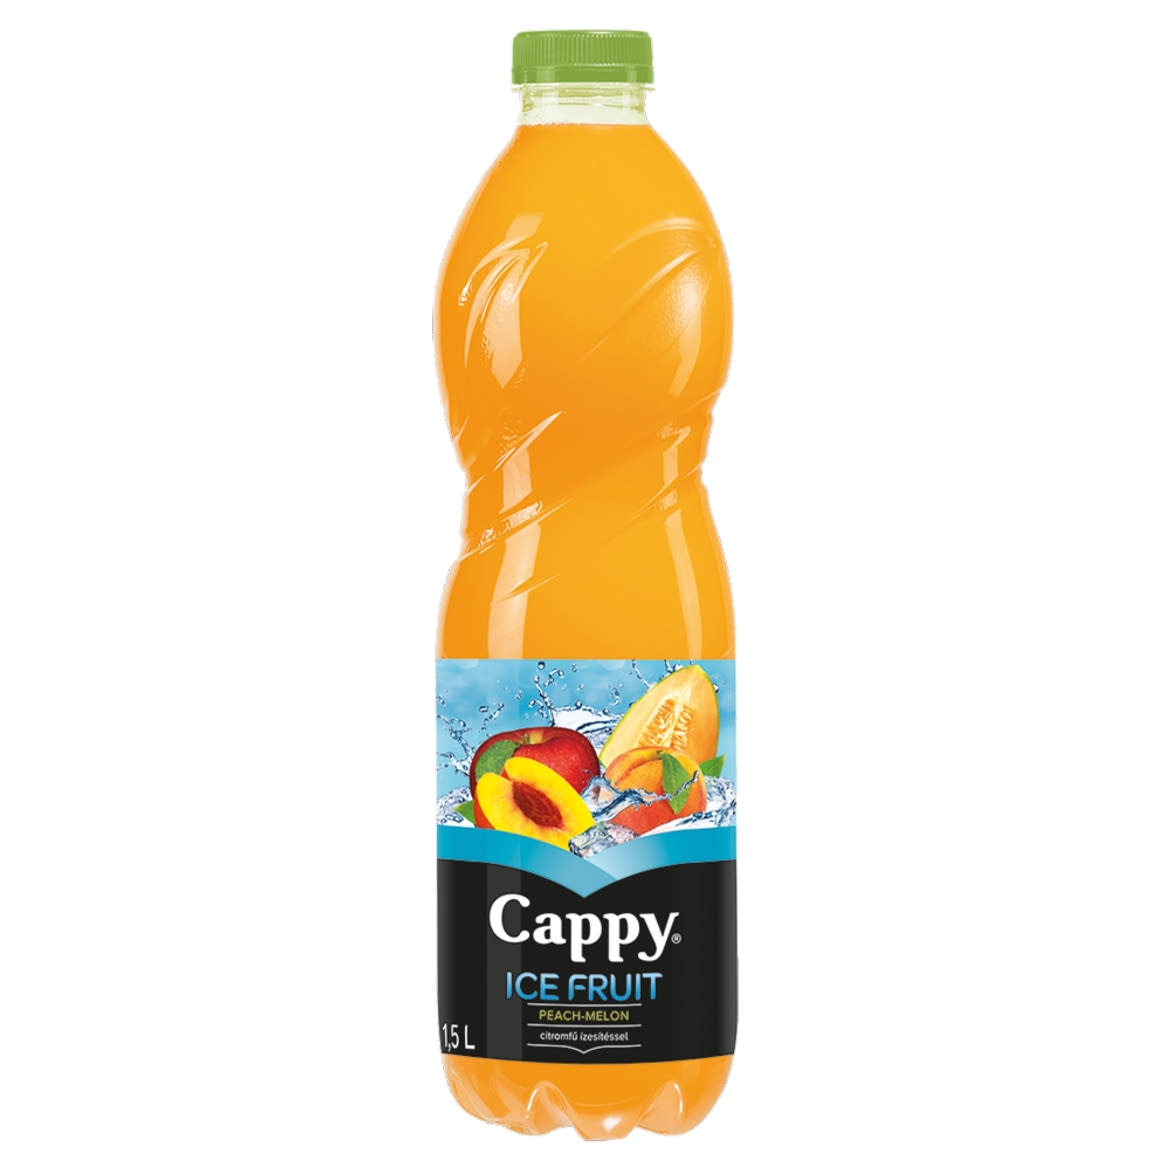 Cappy Ice Fruit Peach-Melon szénsavmentes alma-őszibarack-sárgadinnye ital citromfű ízzel